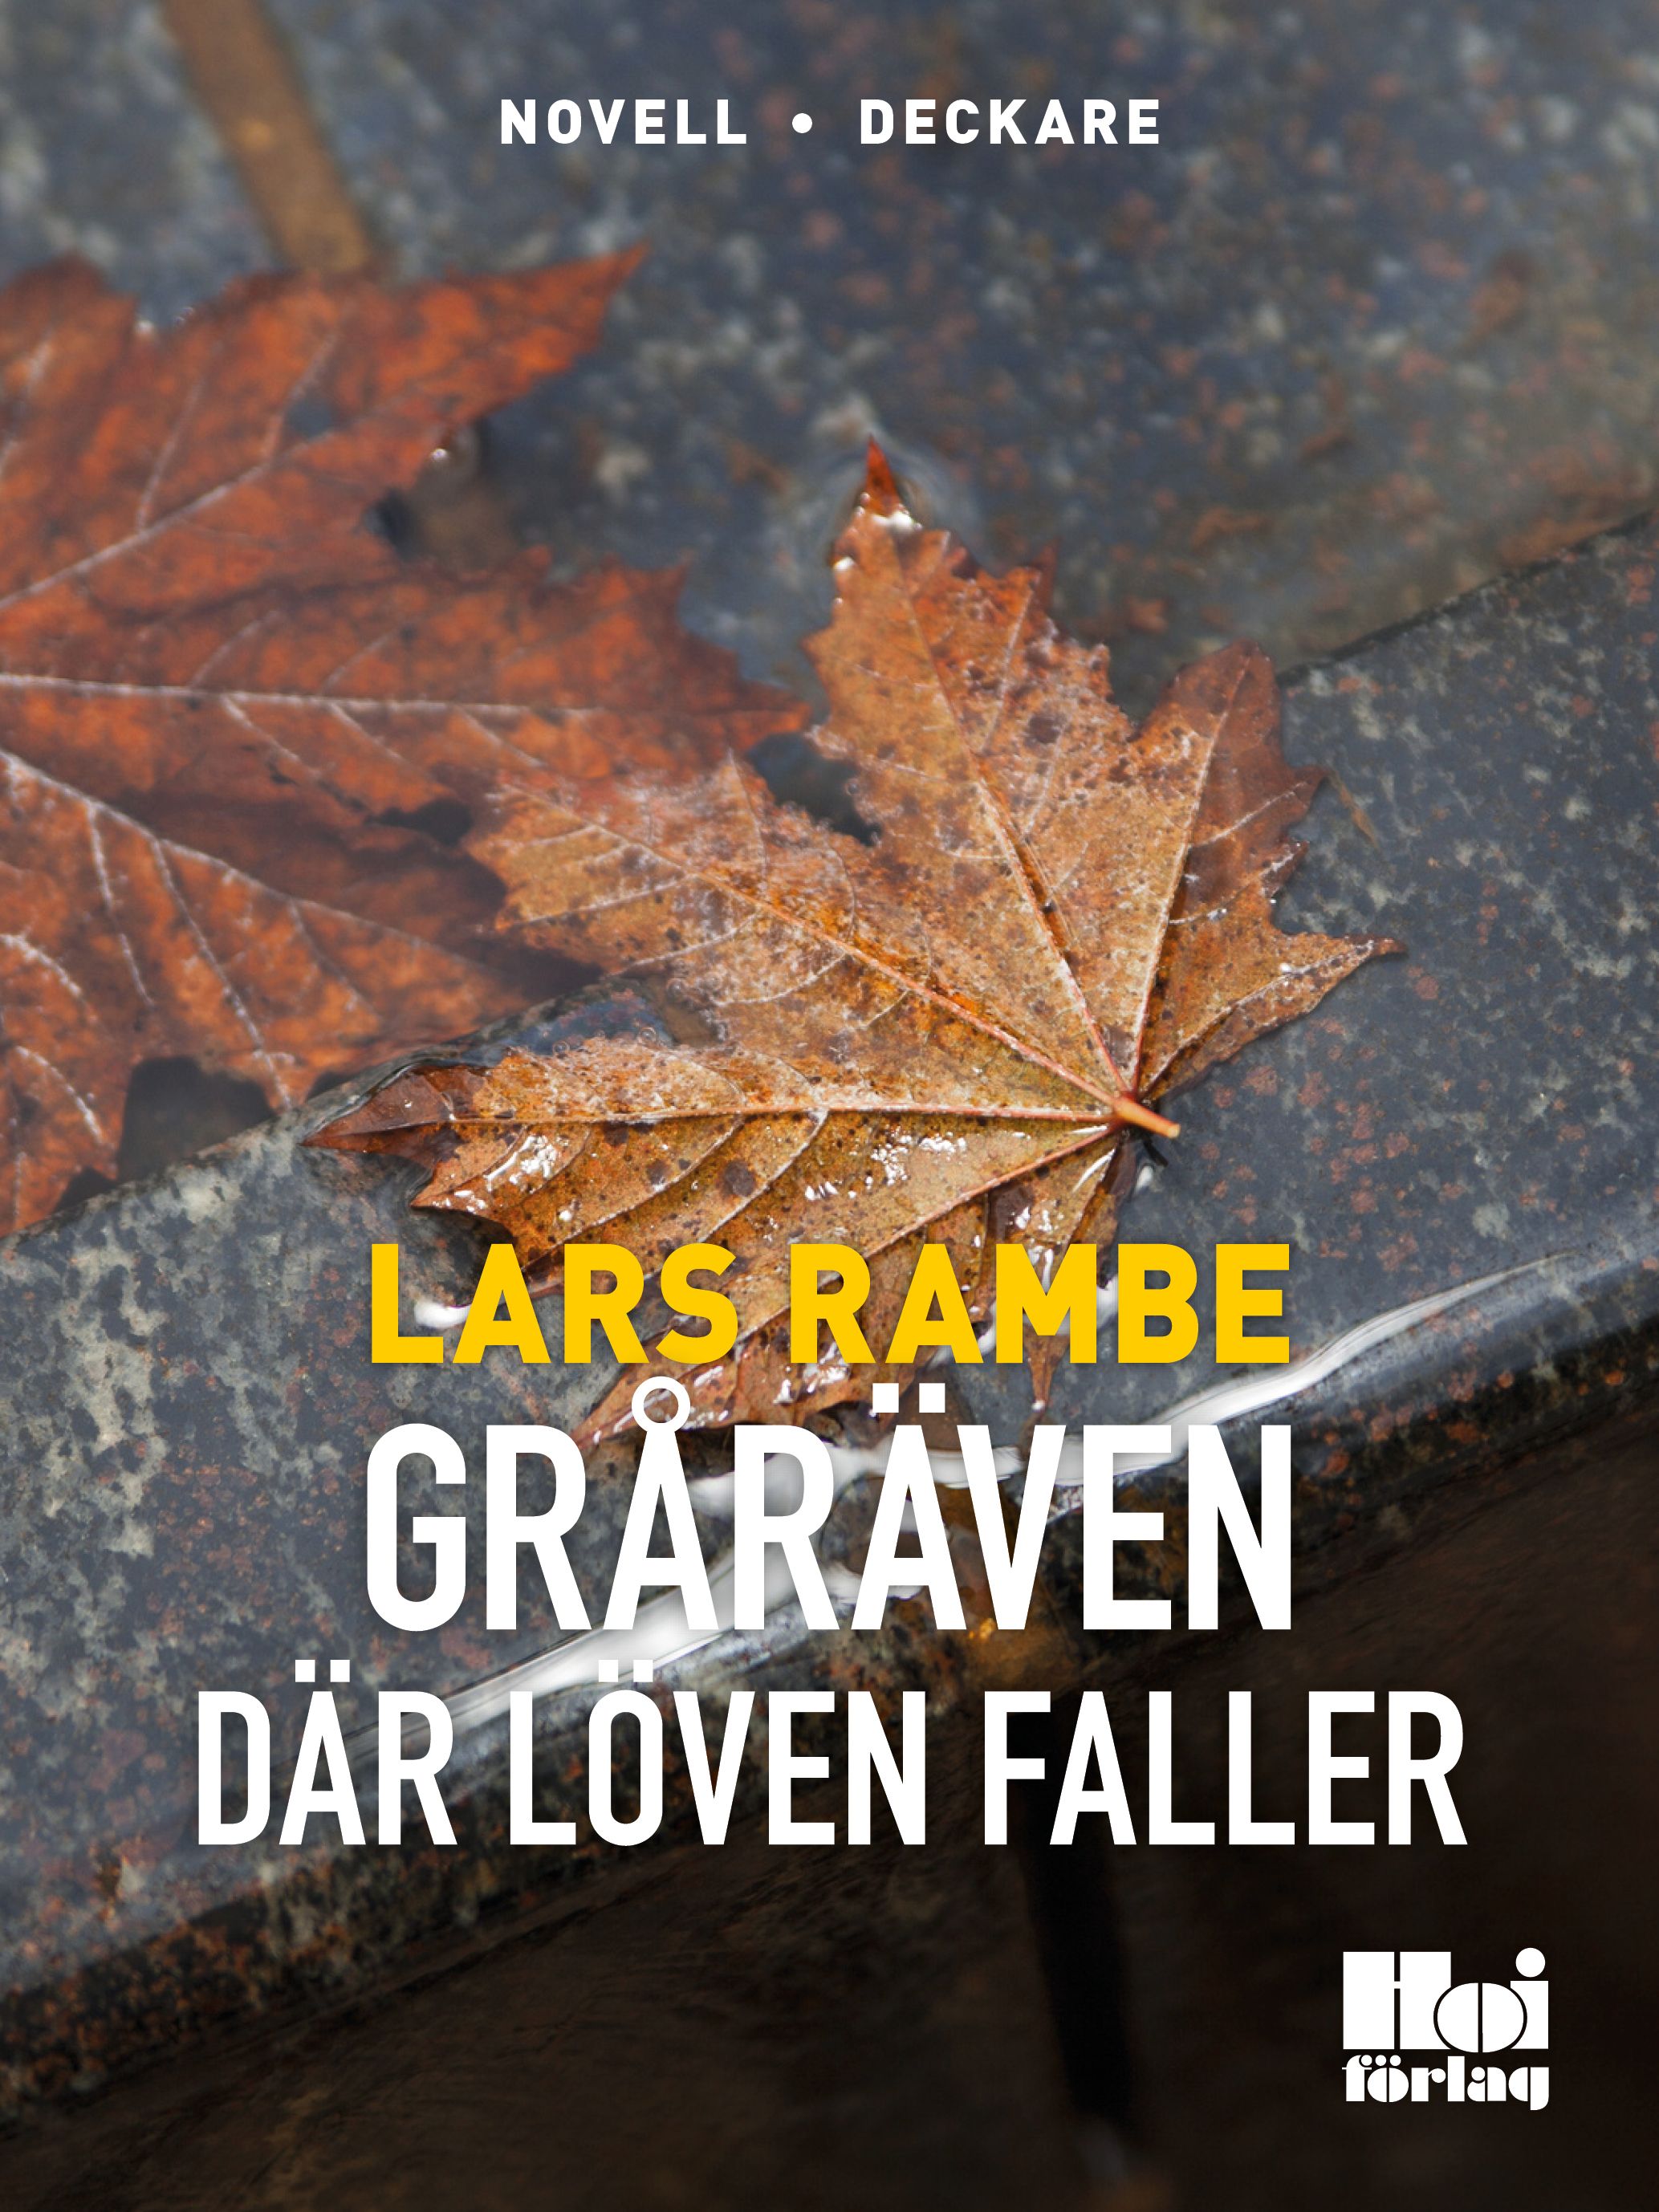 Gråräven 2 - Där löven faller, eBook by Lars Rambe